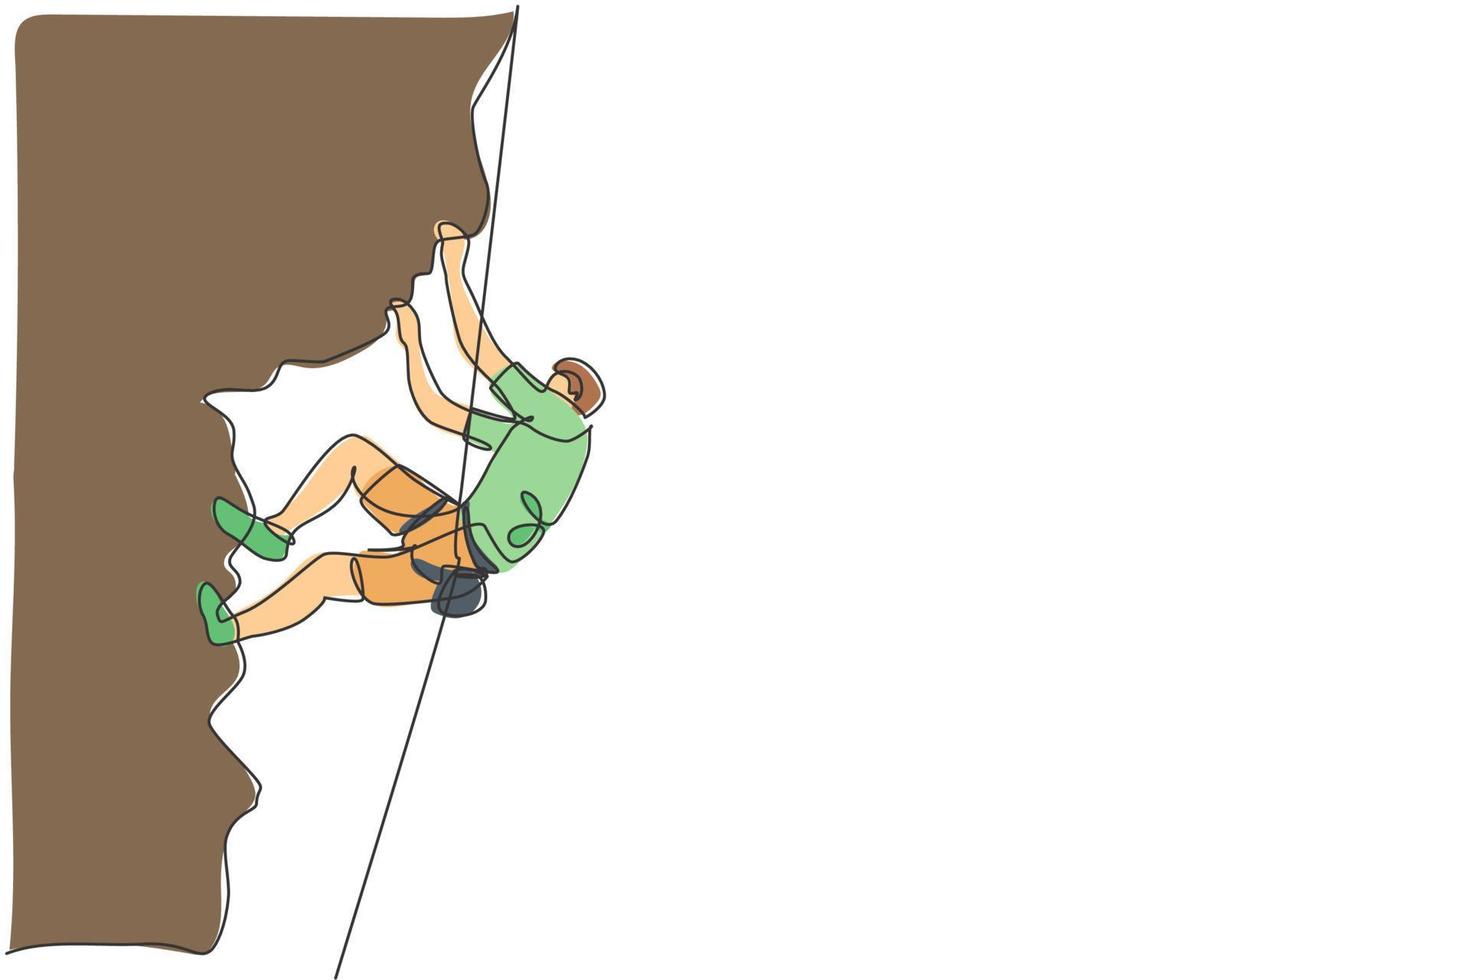 enkele doorlopende lijntekening van jonge gespierde bergbeklimmer man klimmen opknoping op berg grip. outdoor actieve levensstijl en rotsklimmen concept. trendy één lijn tekenen ontwerp vectorillustratie vector